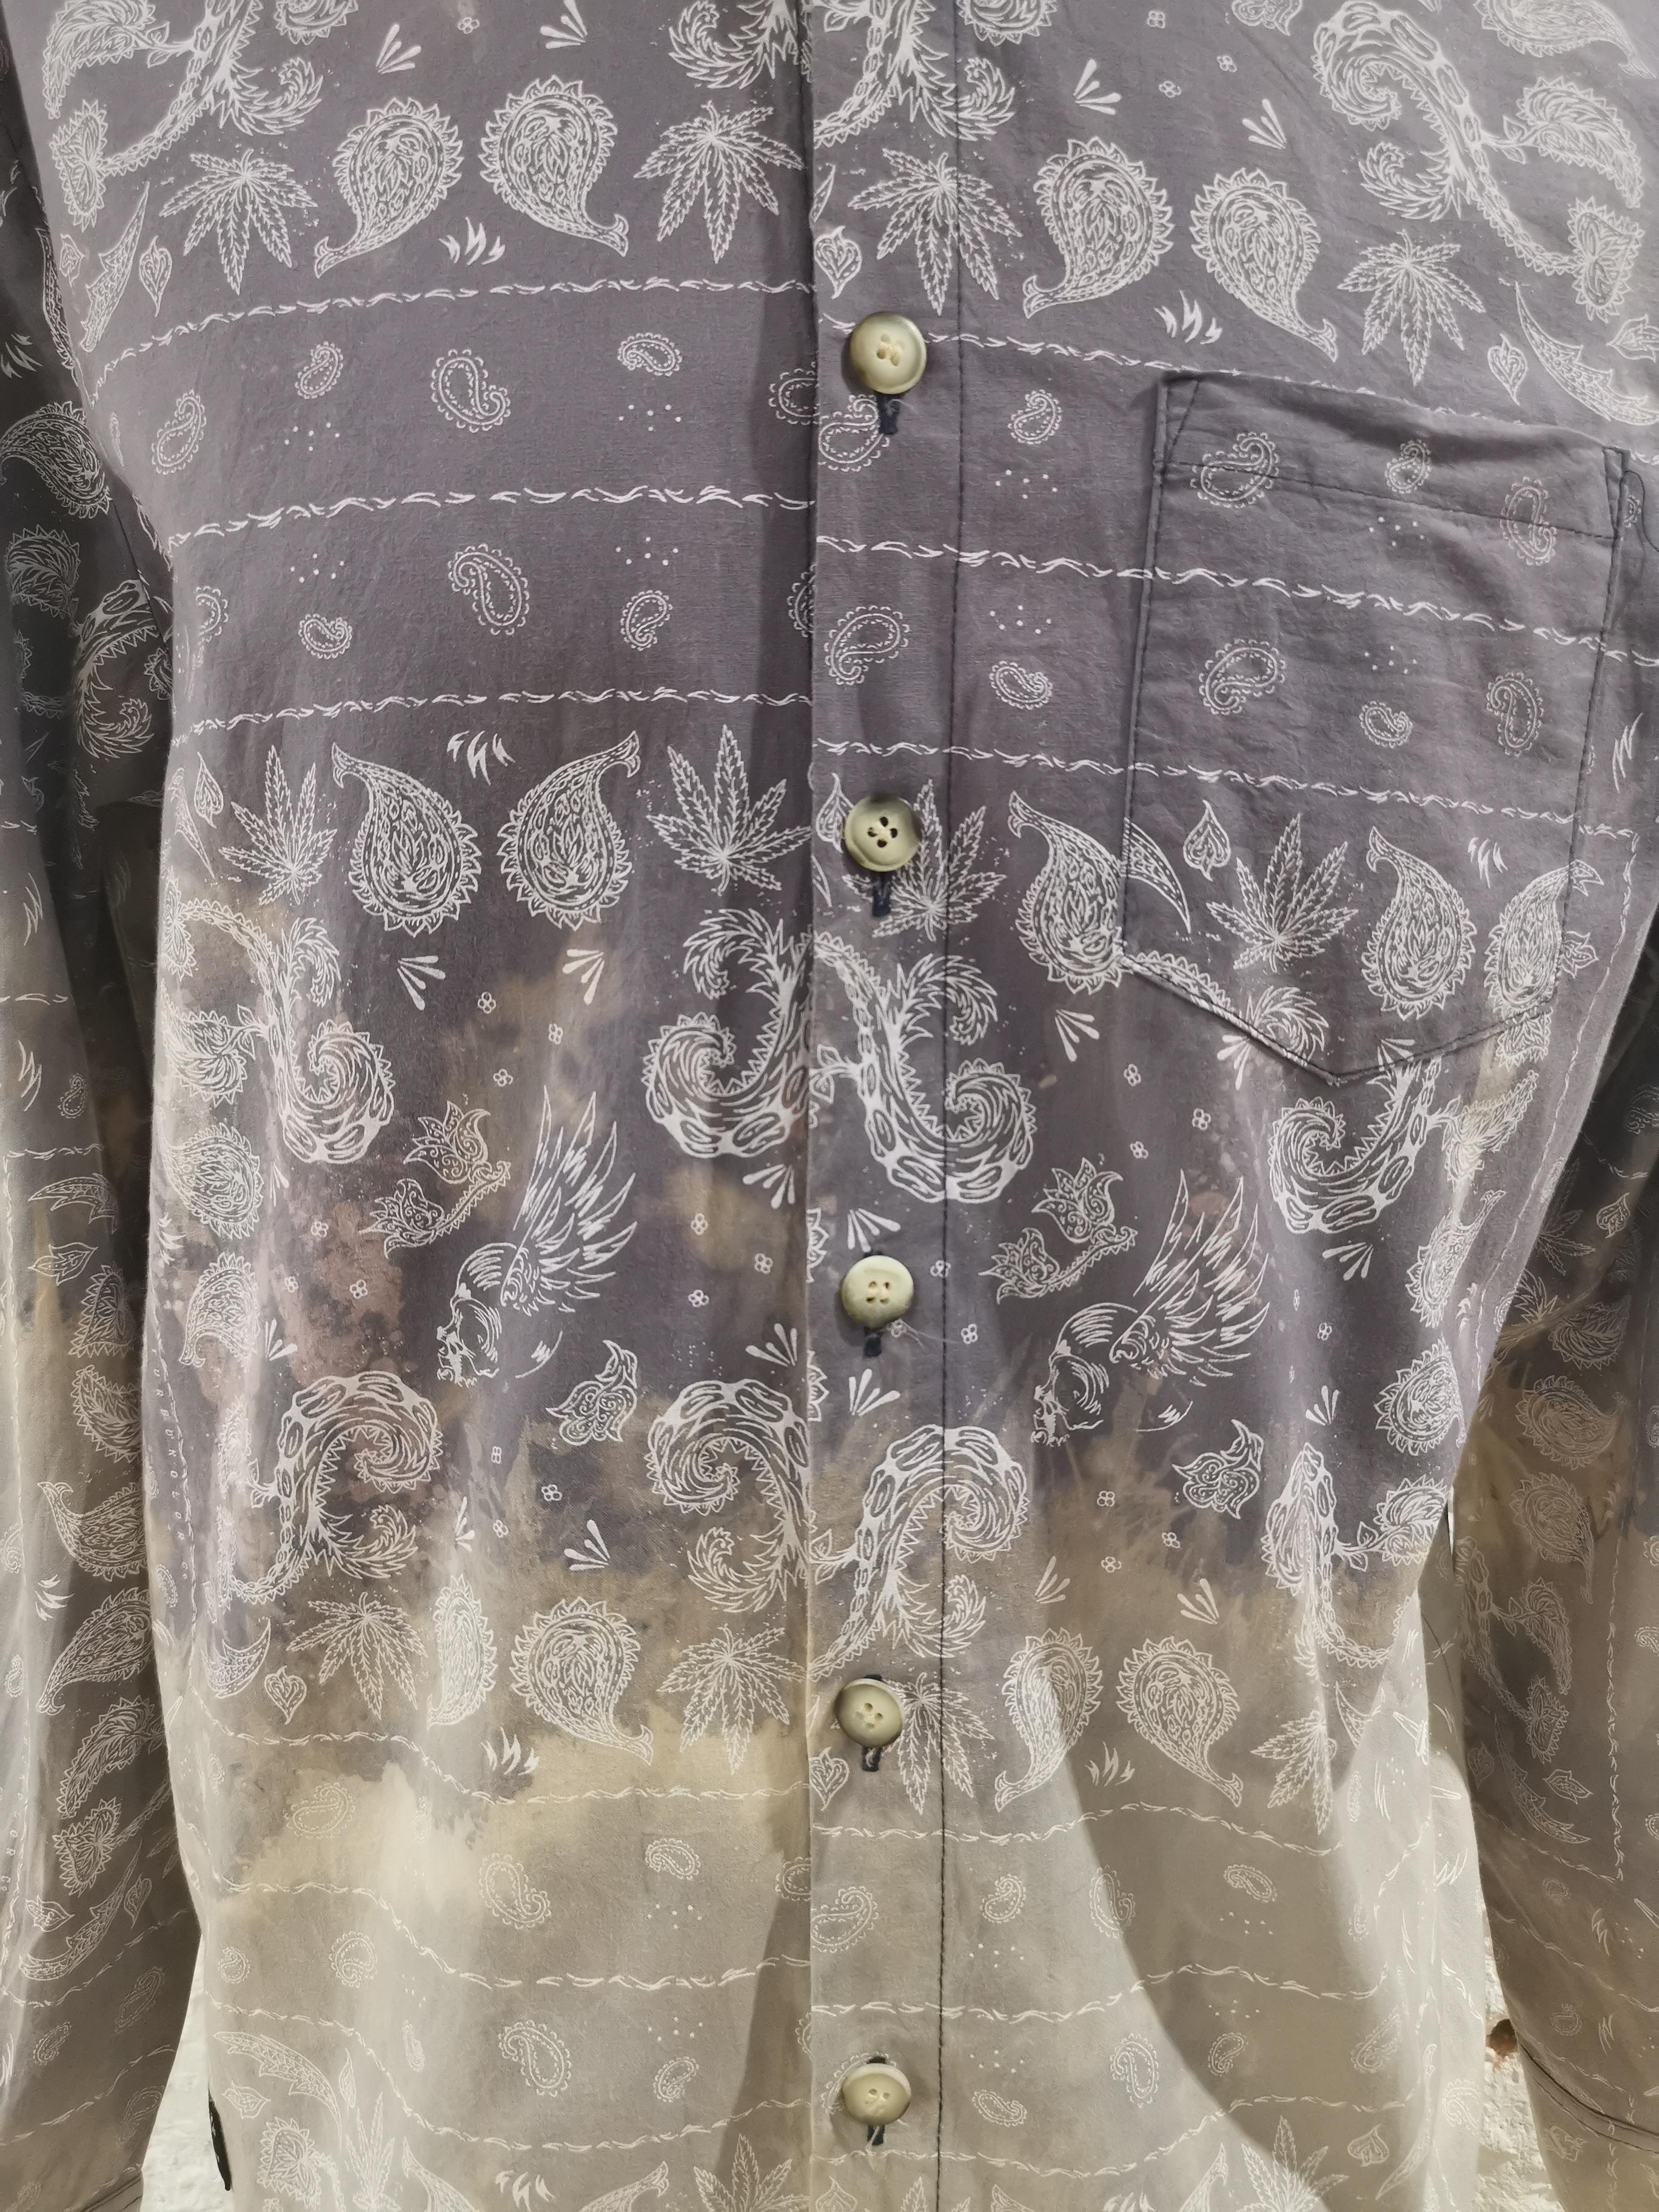 Vintage grey multicoloured shirt
size L
composition: cotton